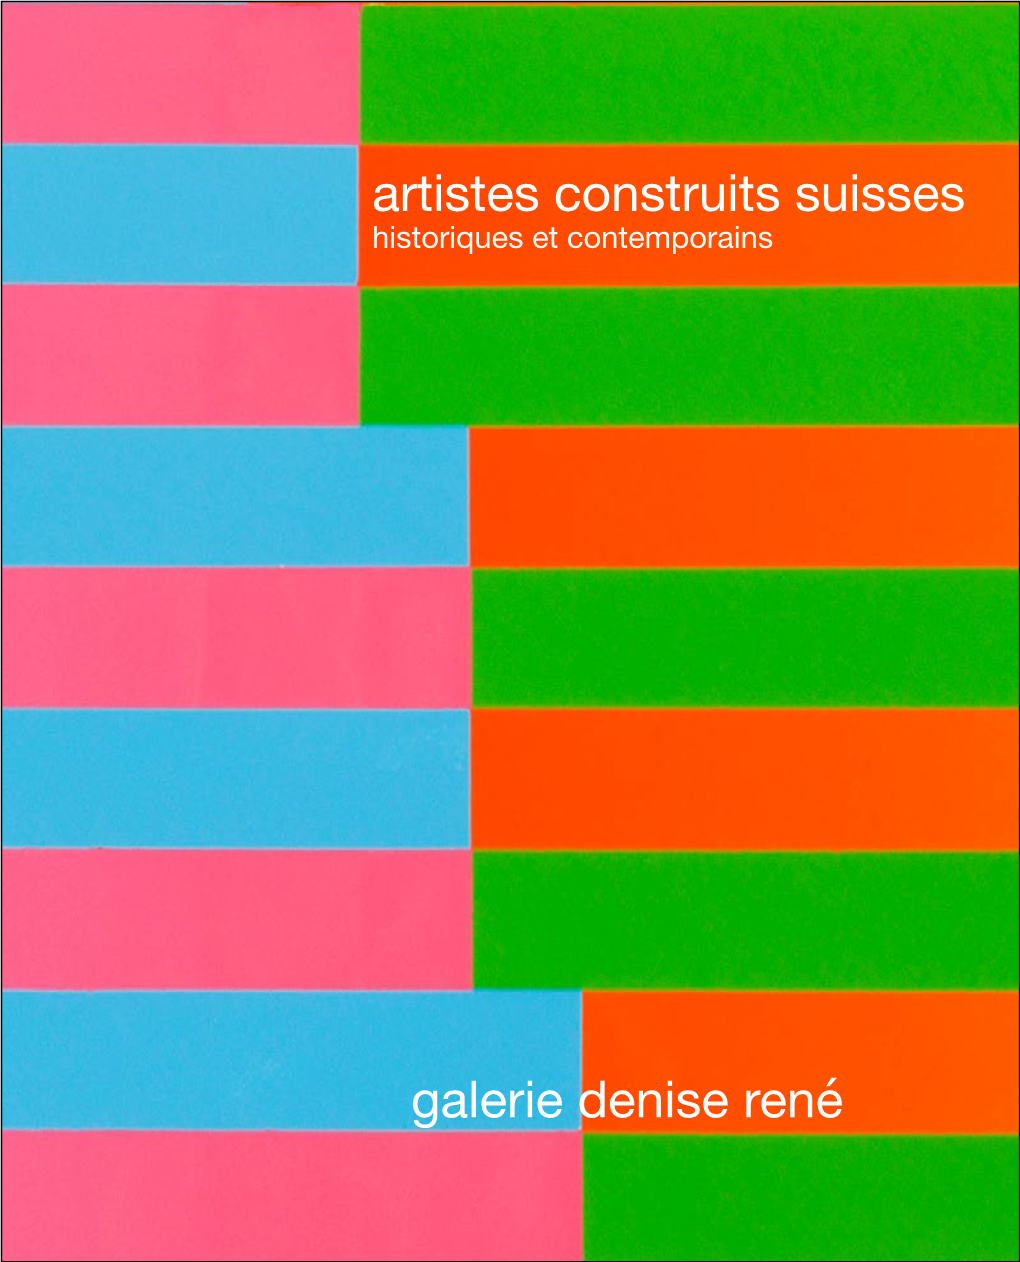 Artistes Construits Suisses Galerie Denise René